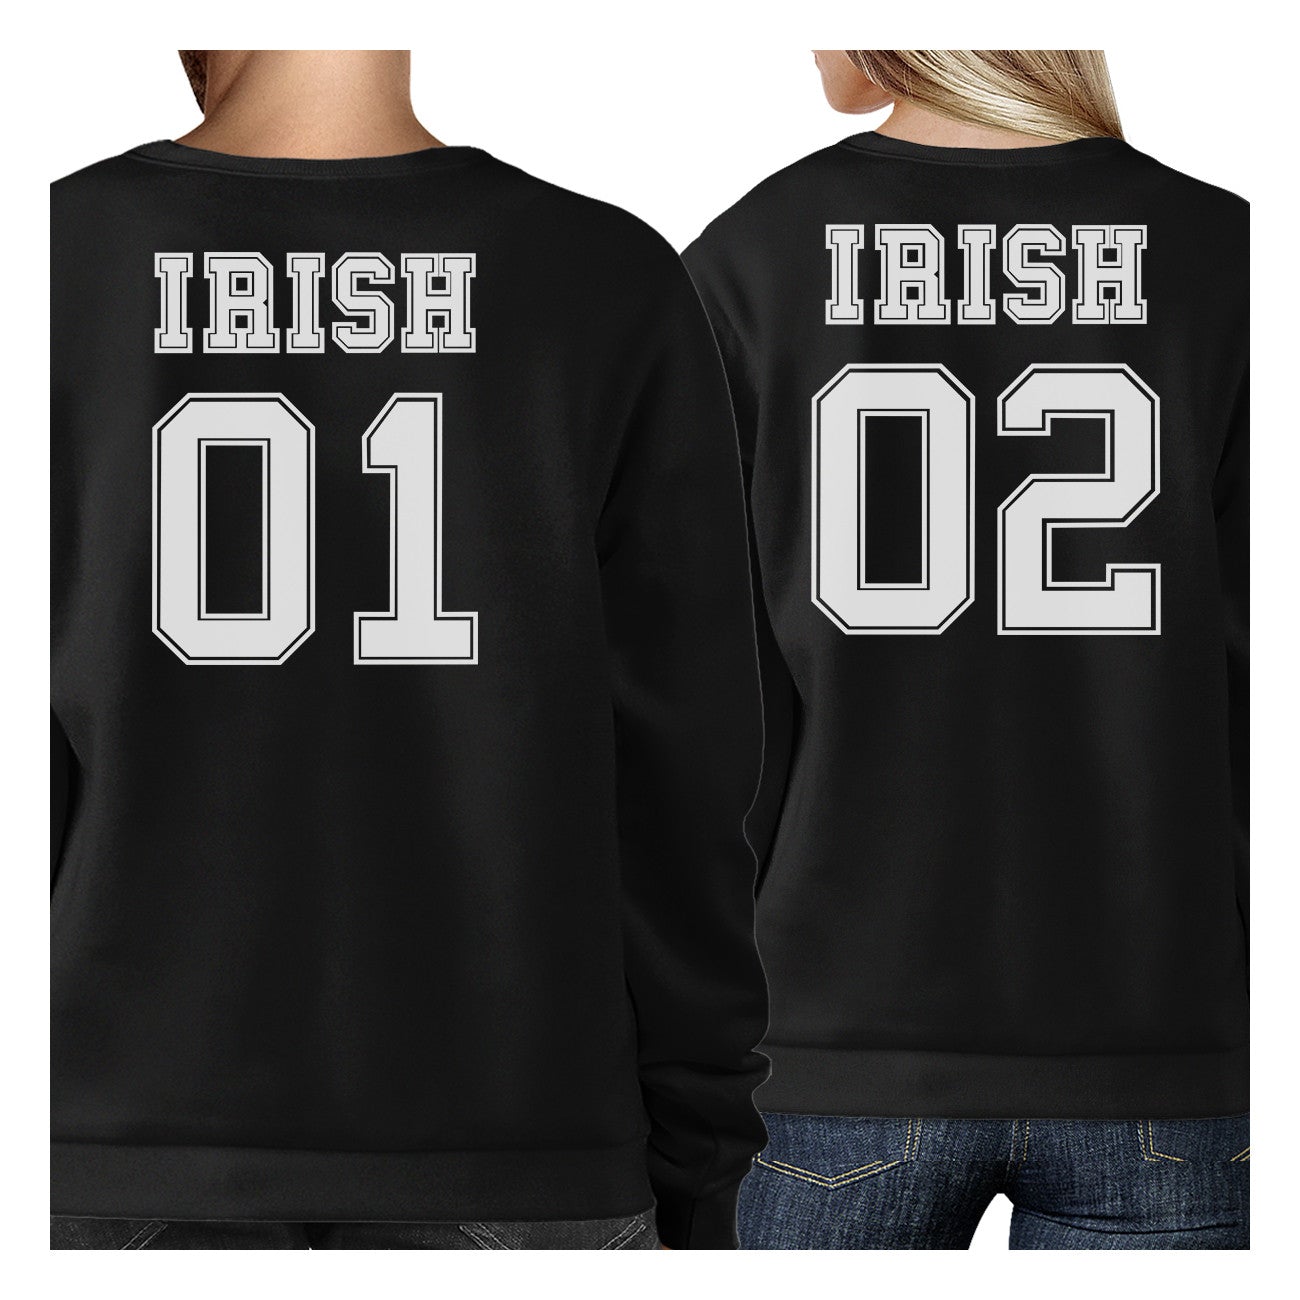 Irish 01 Irish 02 Cute Couple Matching Sweatshirt For Irish Couples - 365 In Love